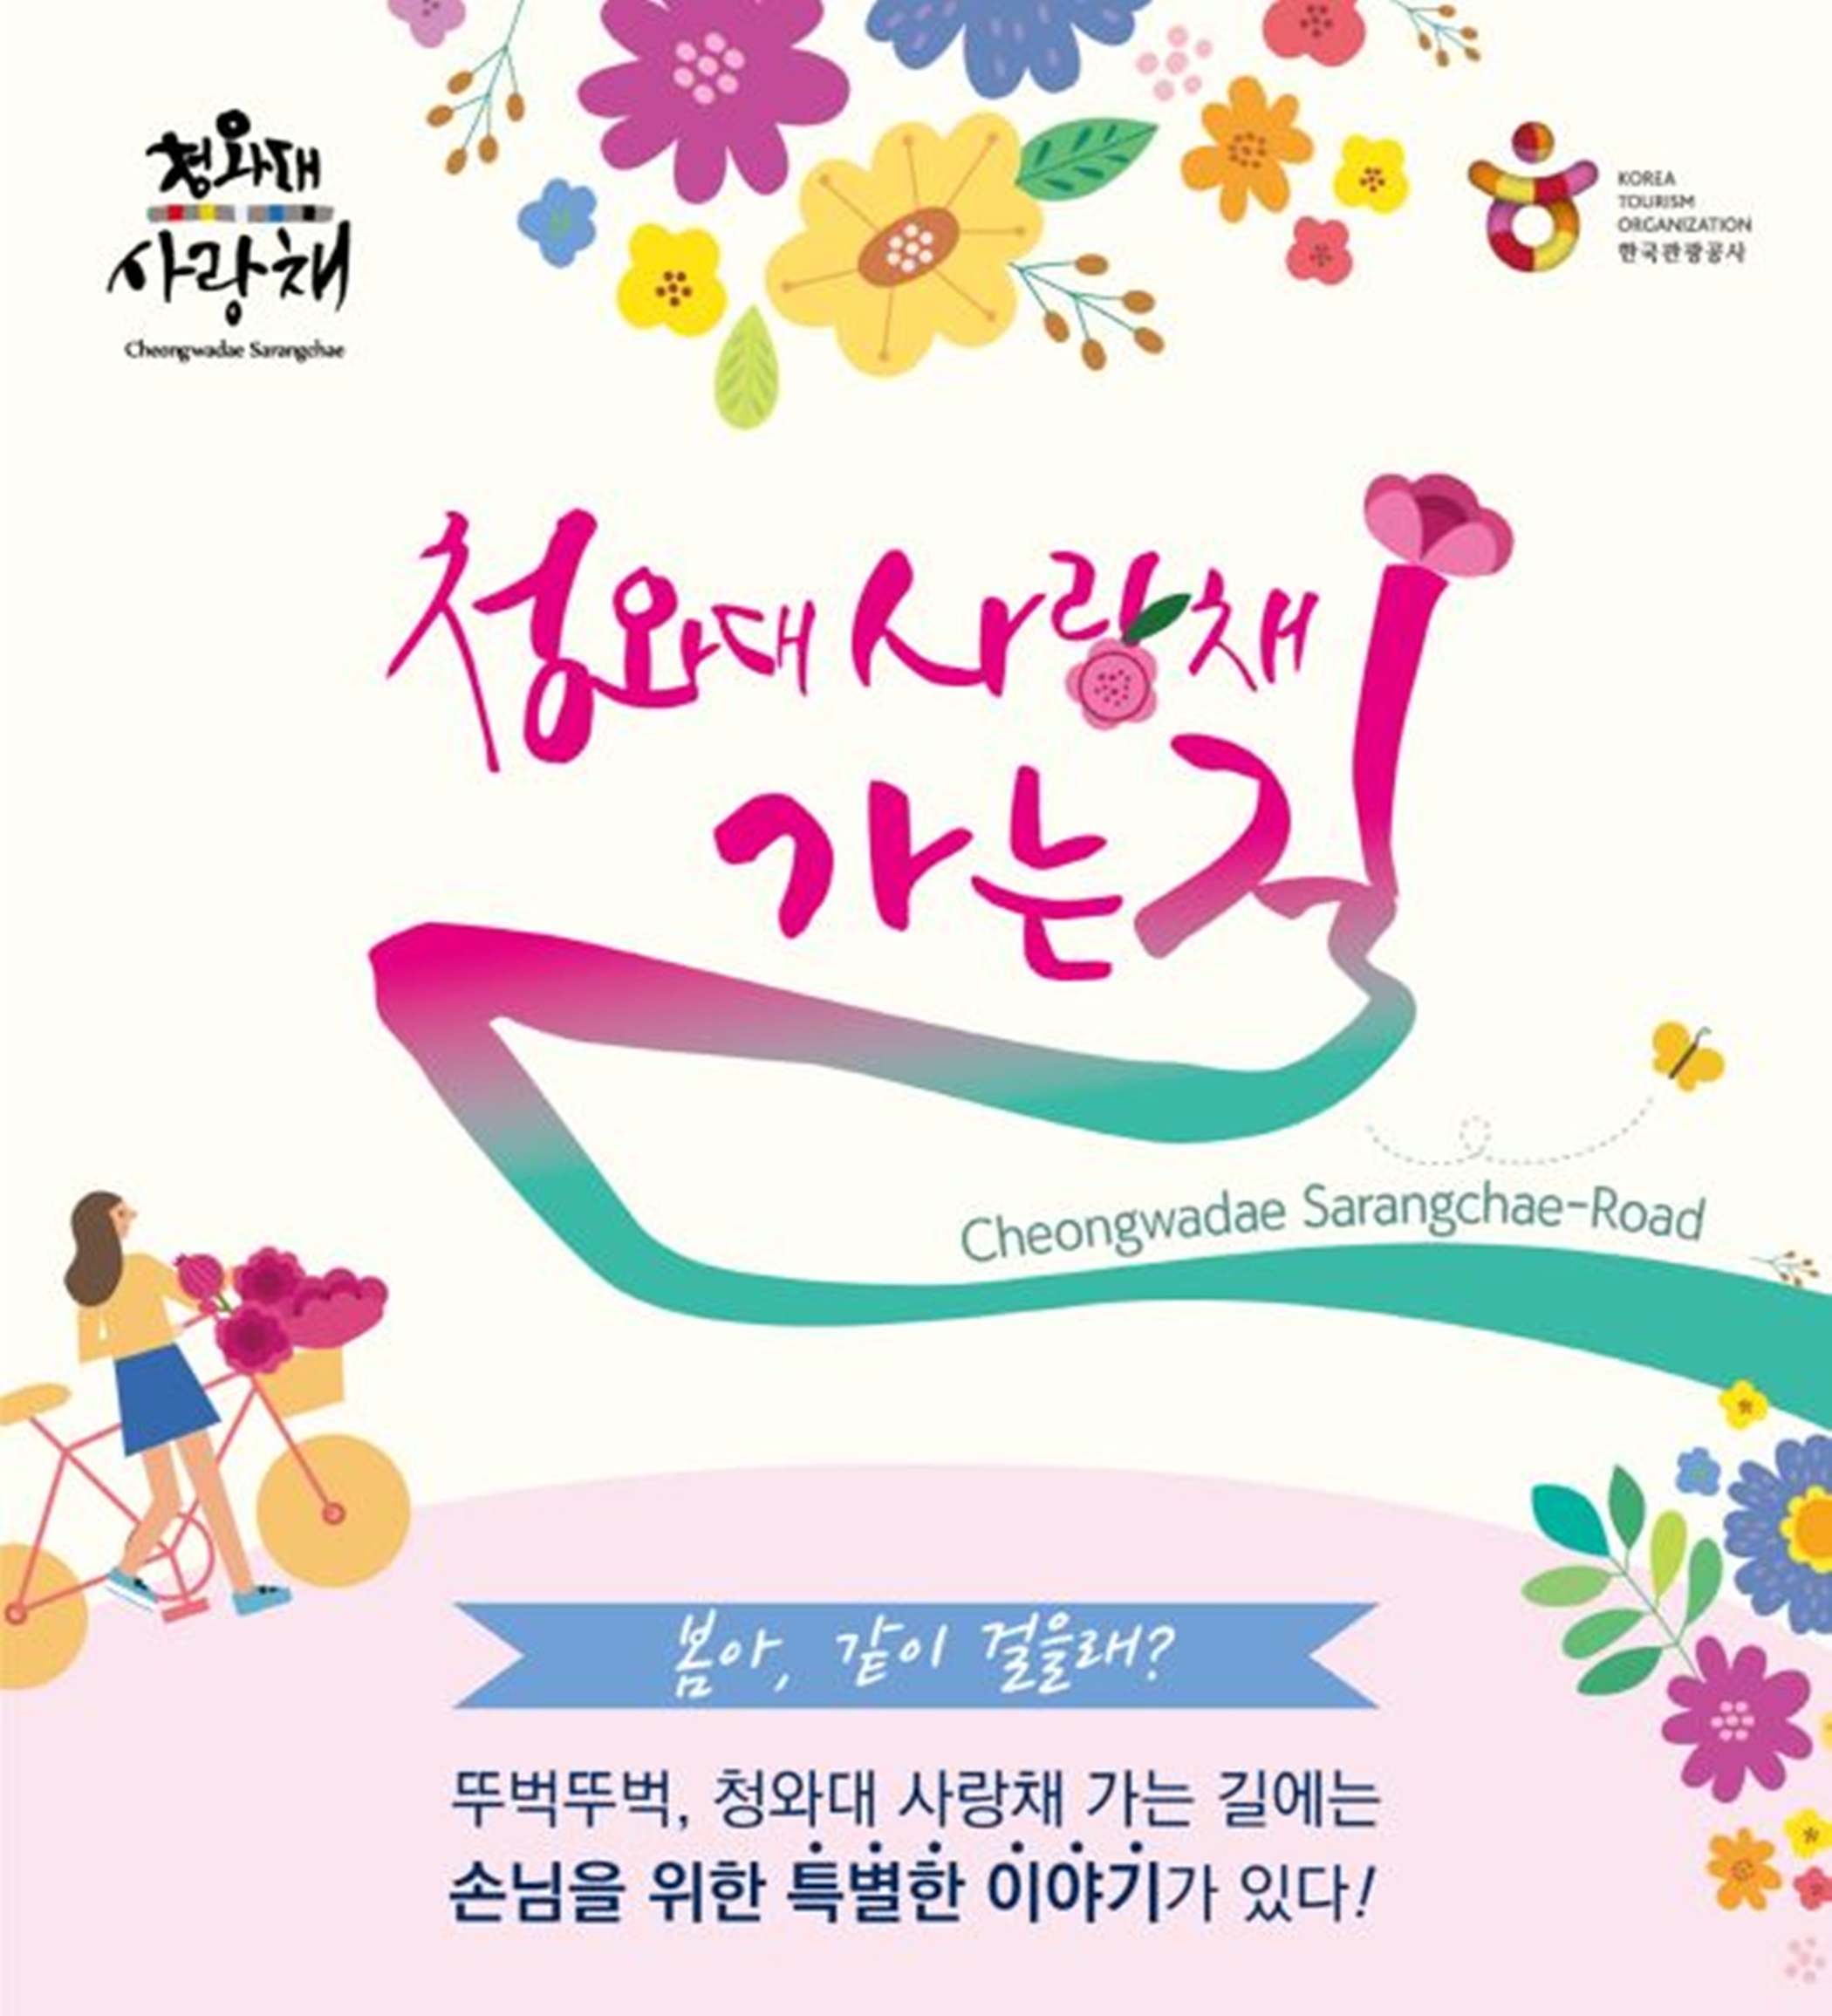 한국관광공사, “봄아 청와대 사랑채로 같이 걸을래?”